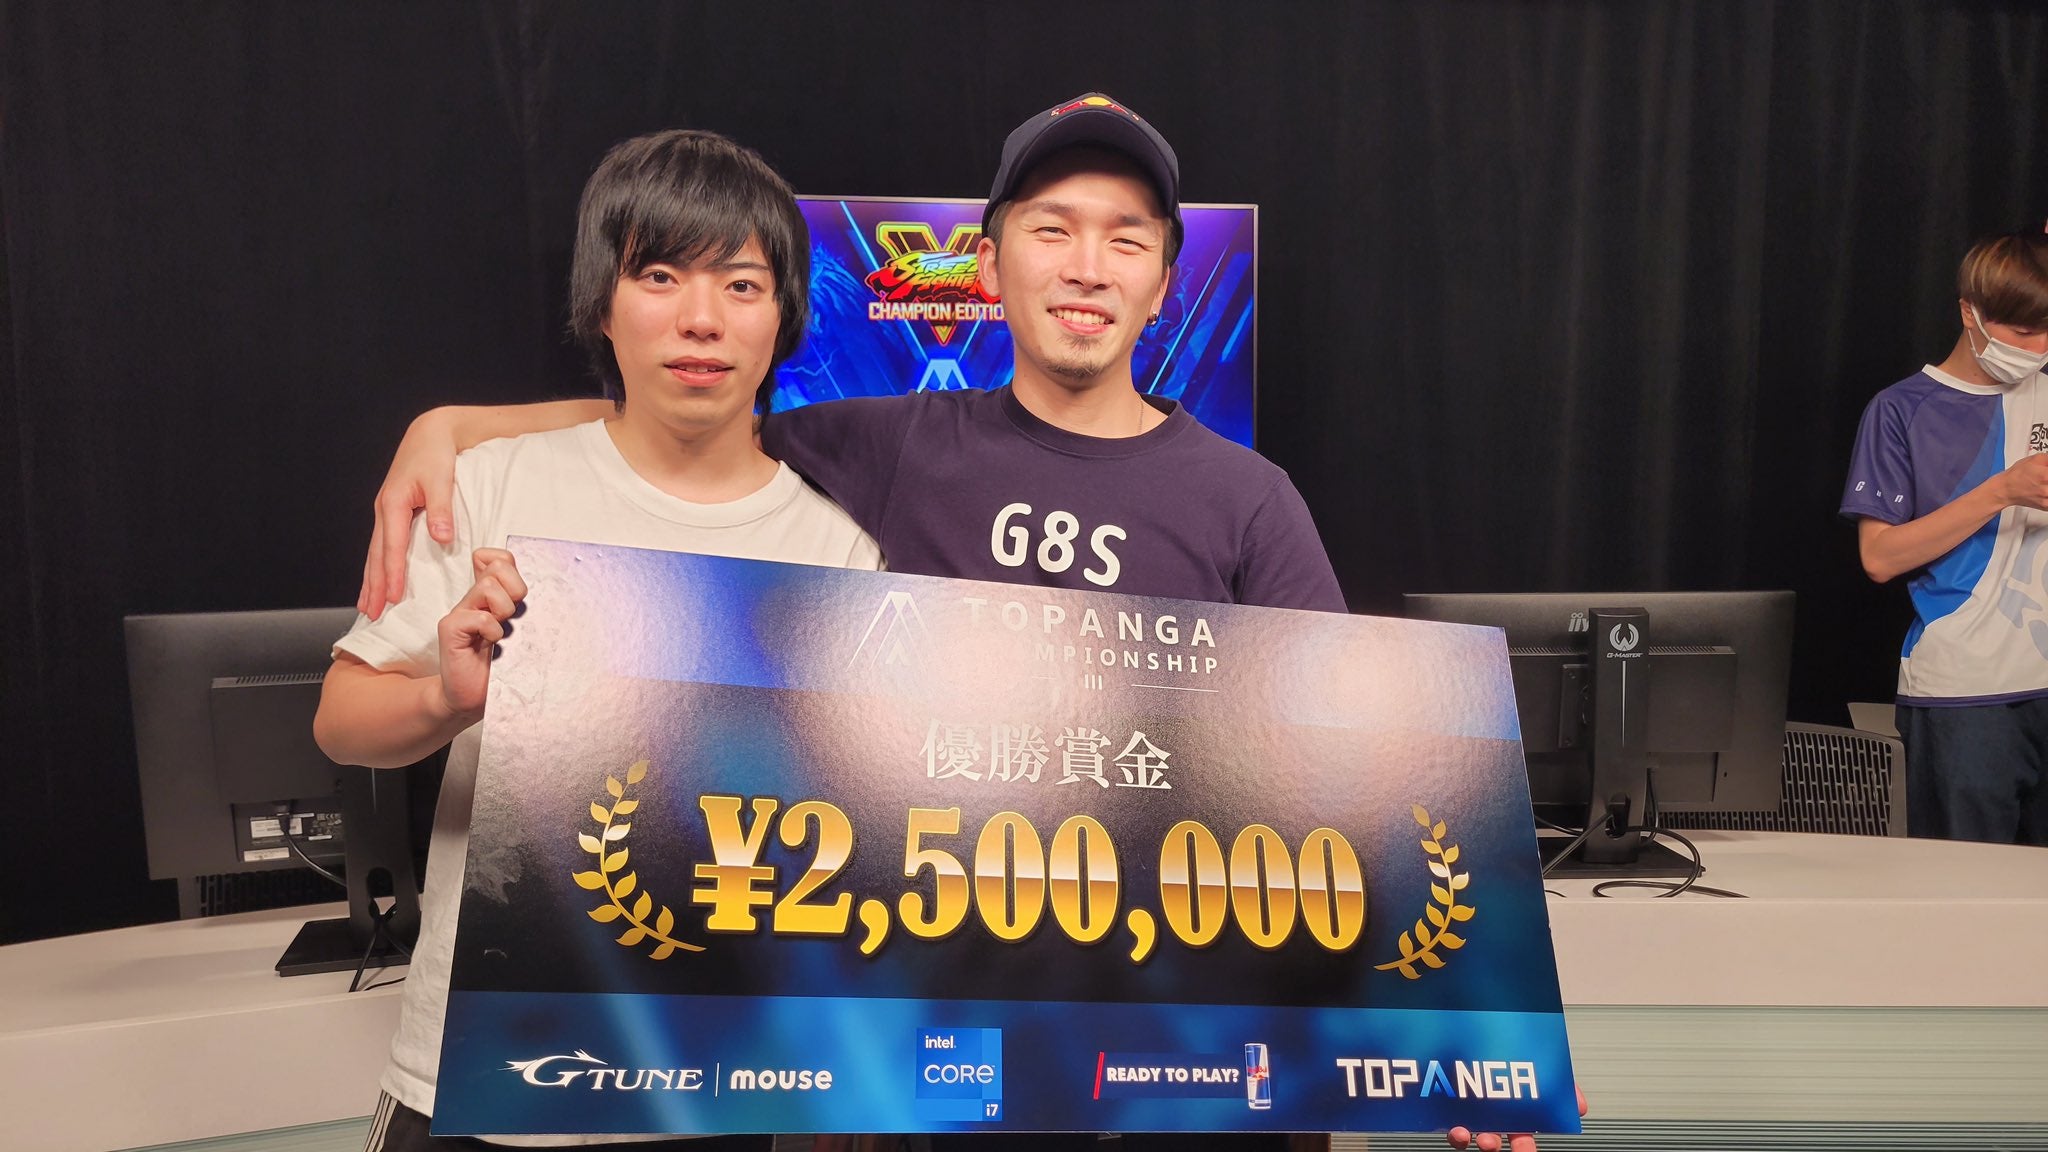 Kawano wins Topanga Championship 3!